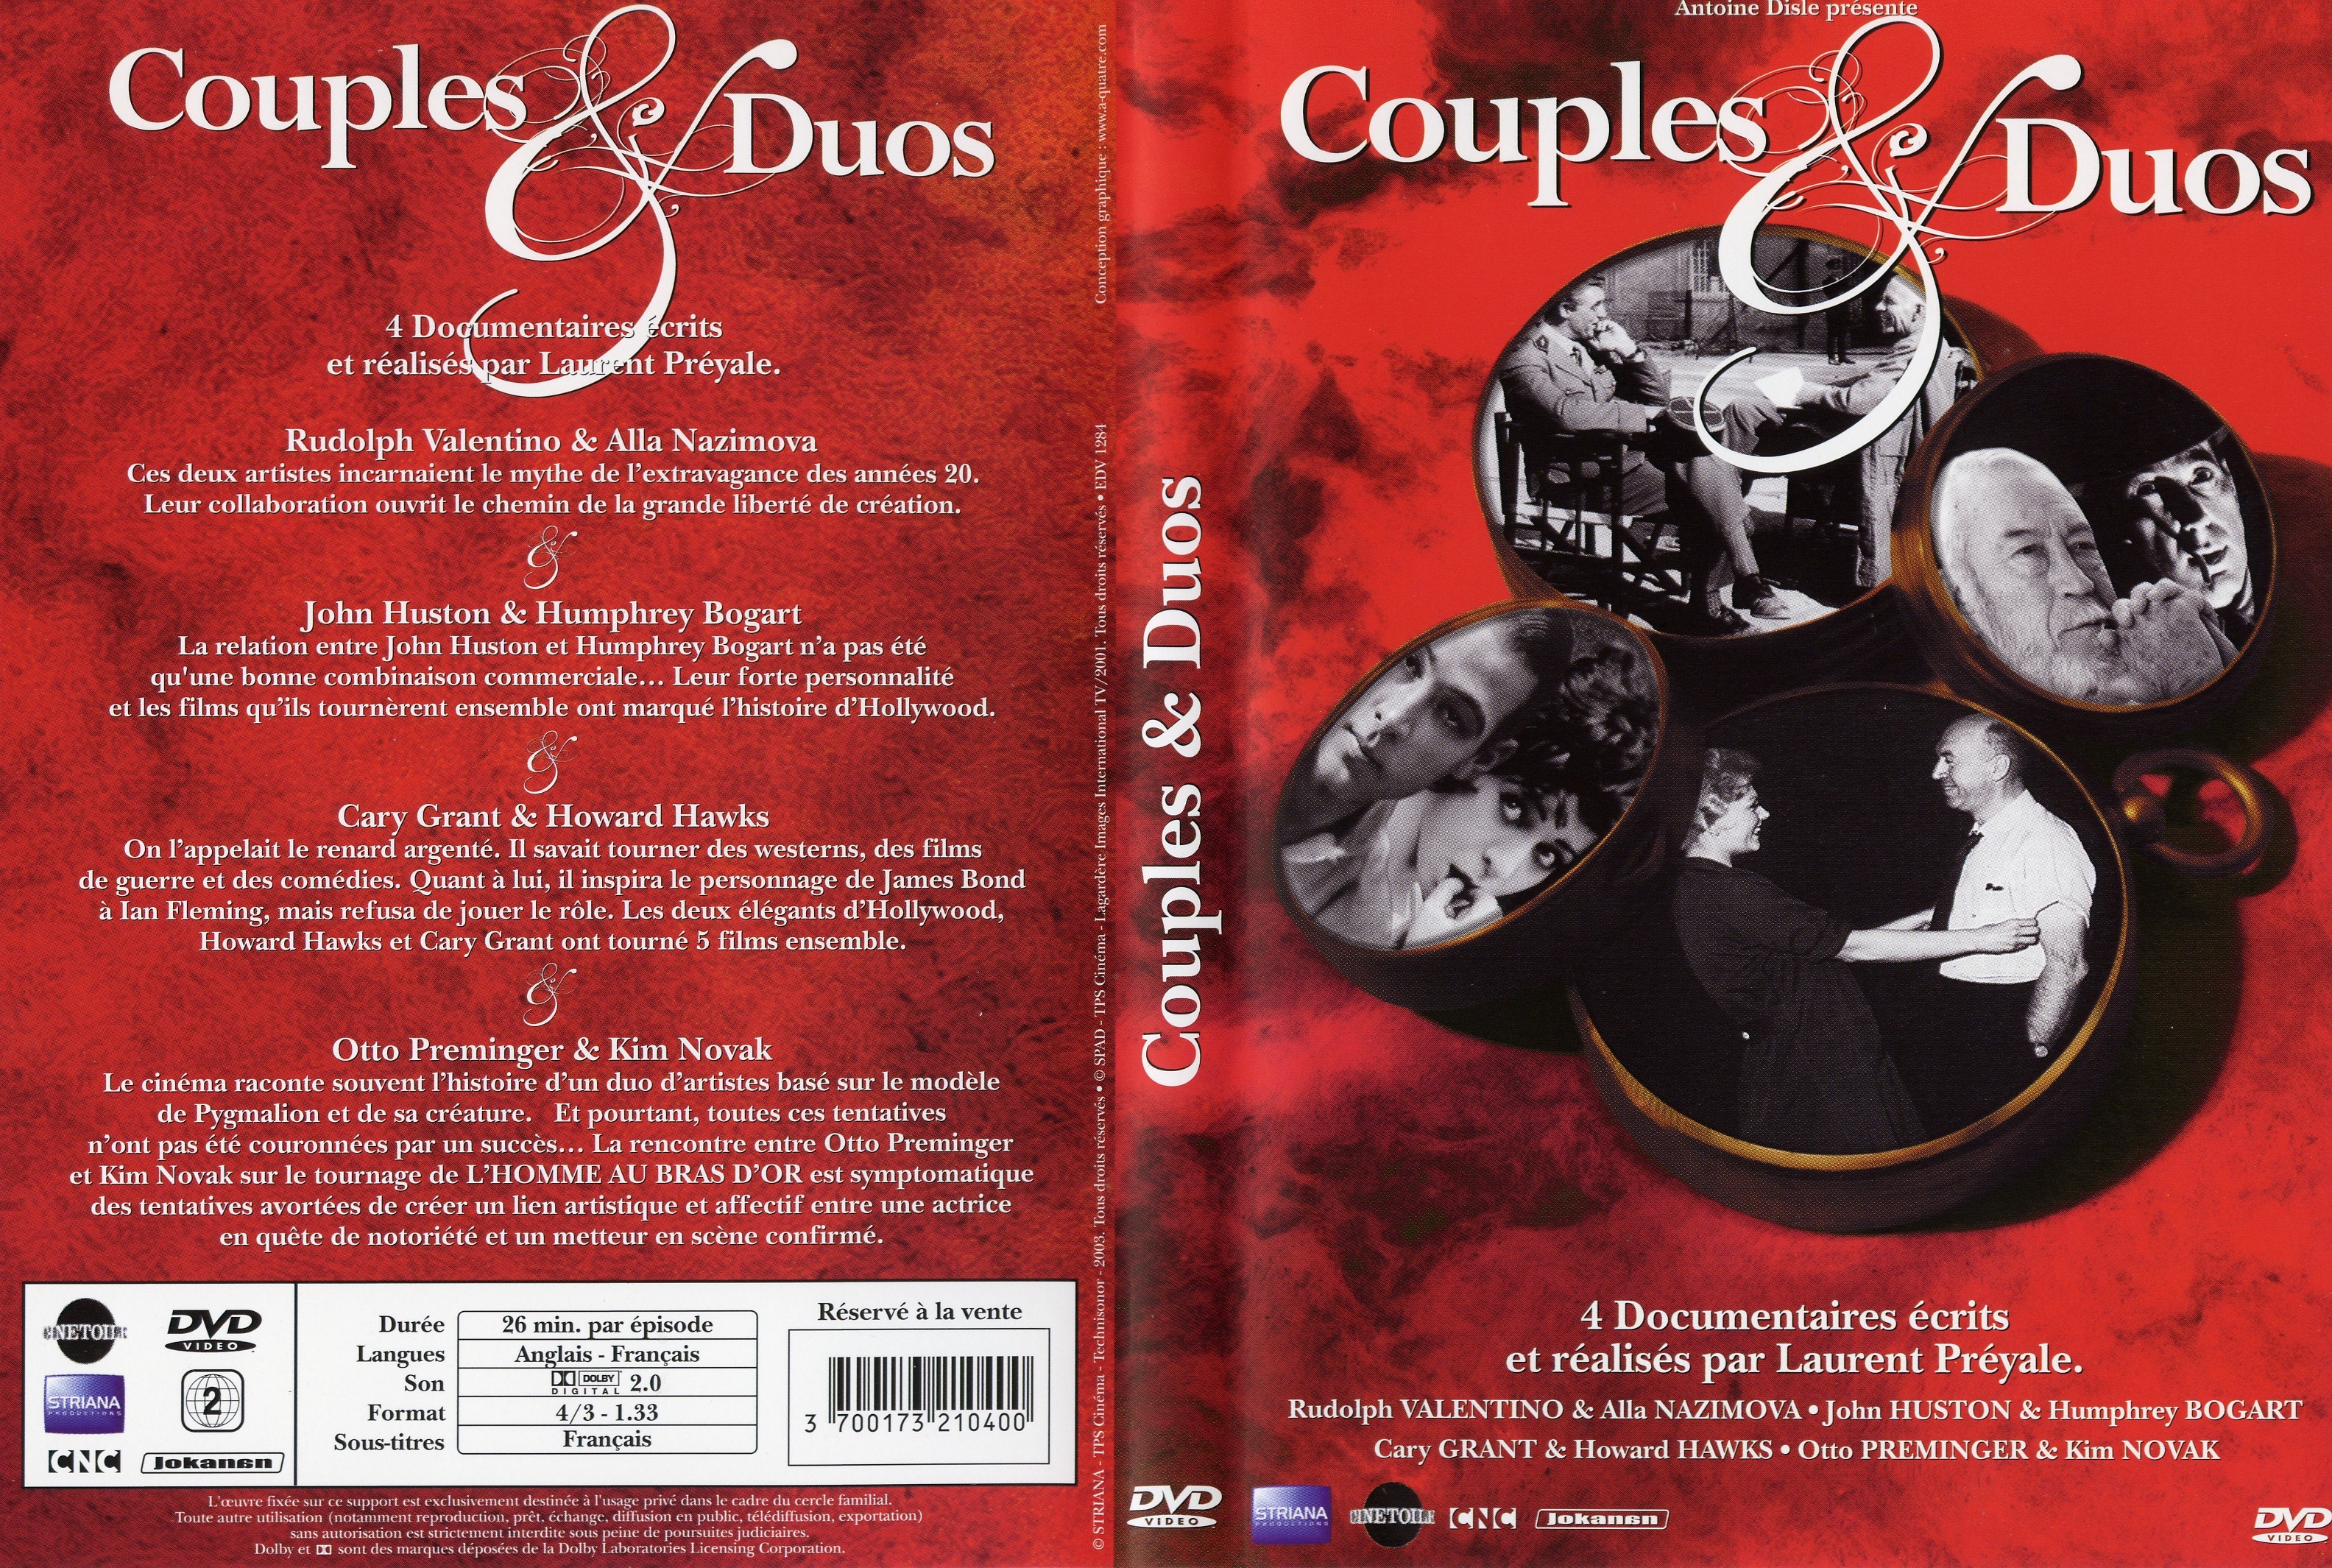 Jaquette DVD Couples et duos DVD 06